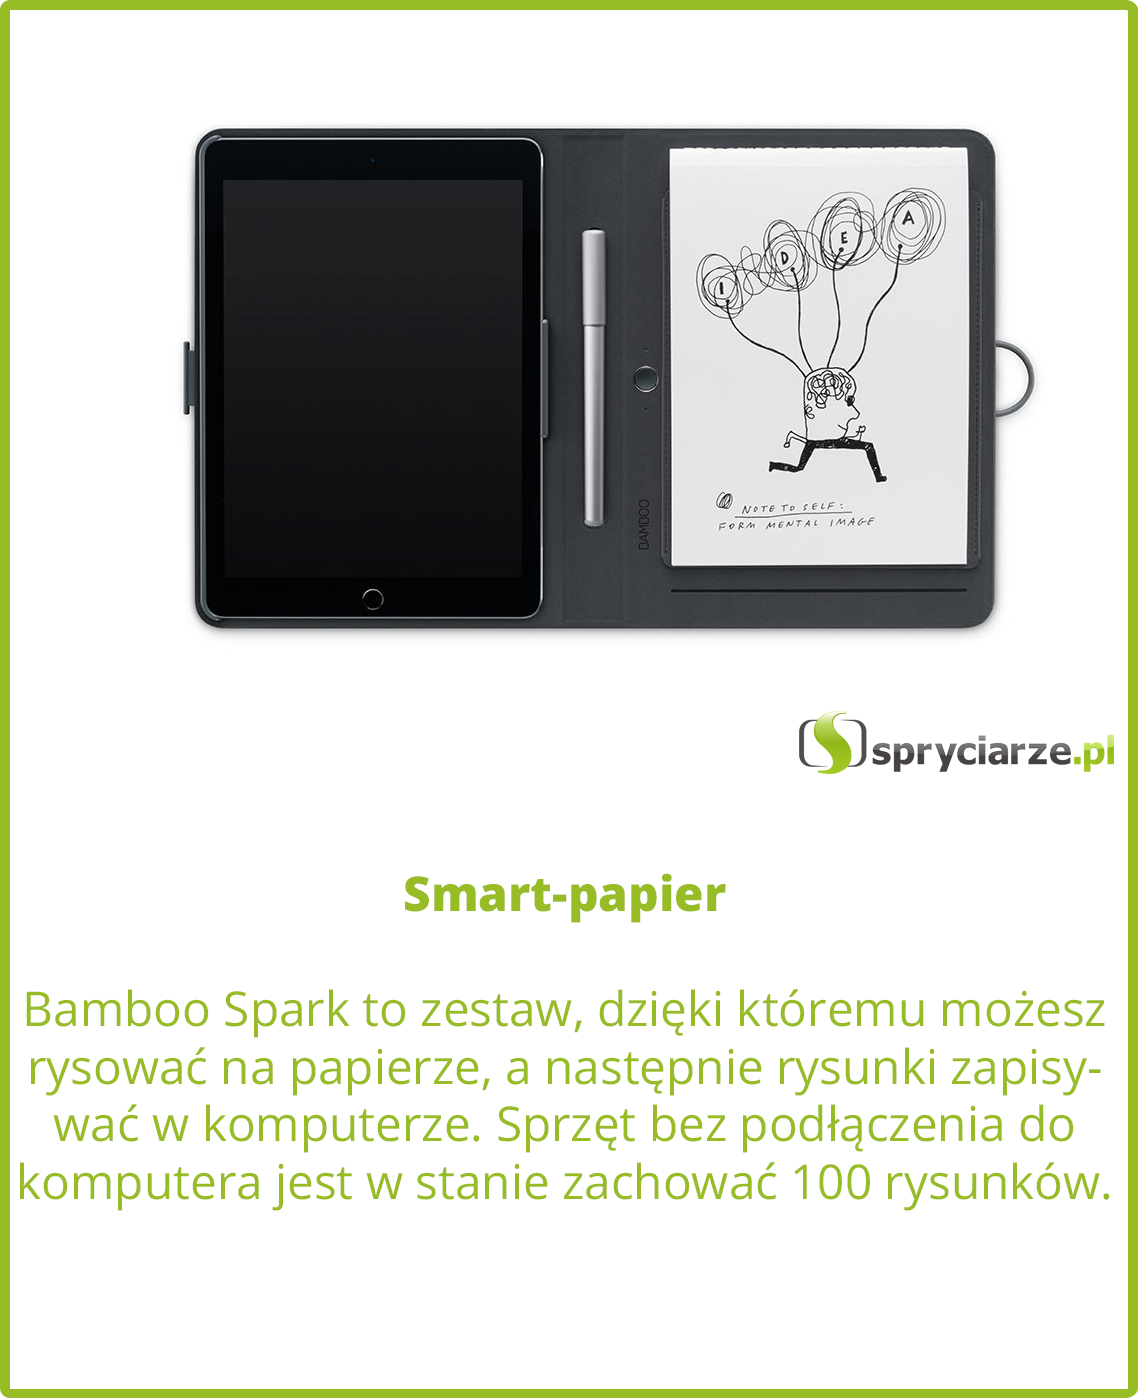 Smart-papier